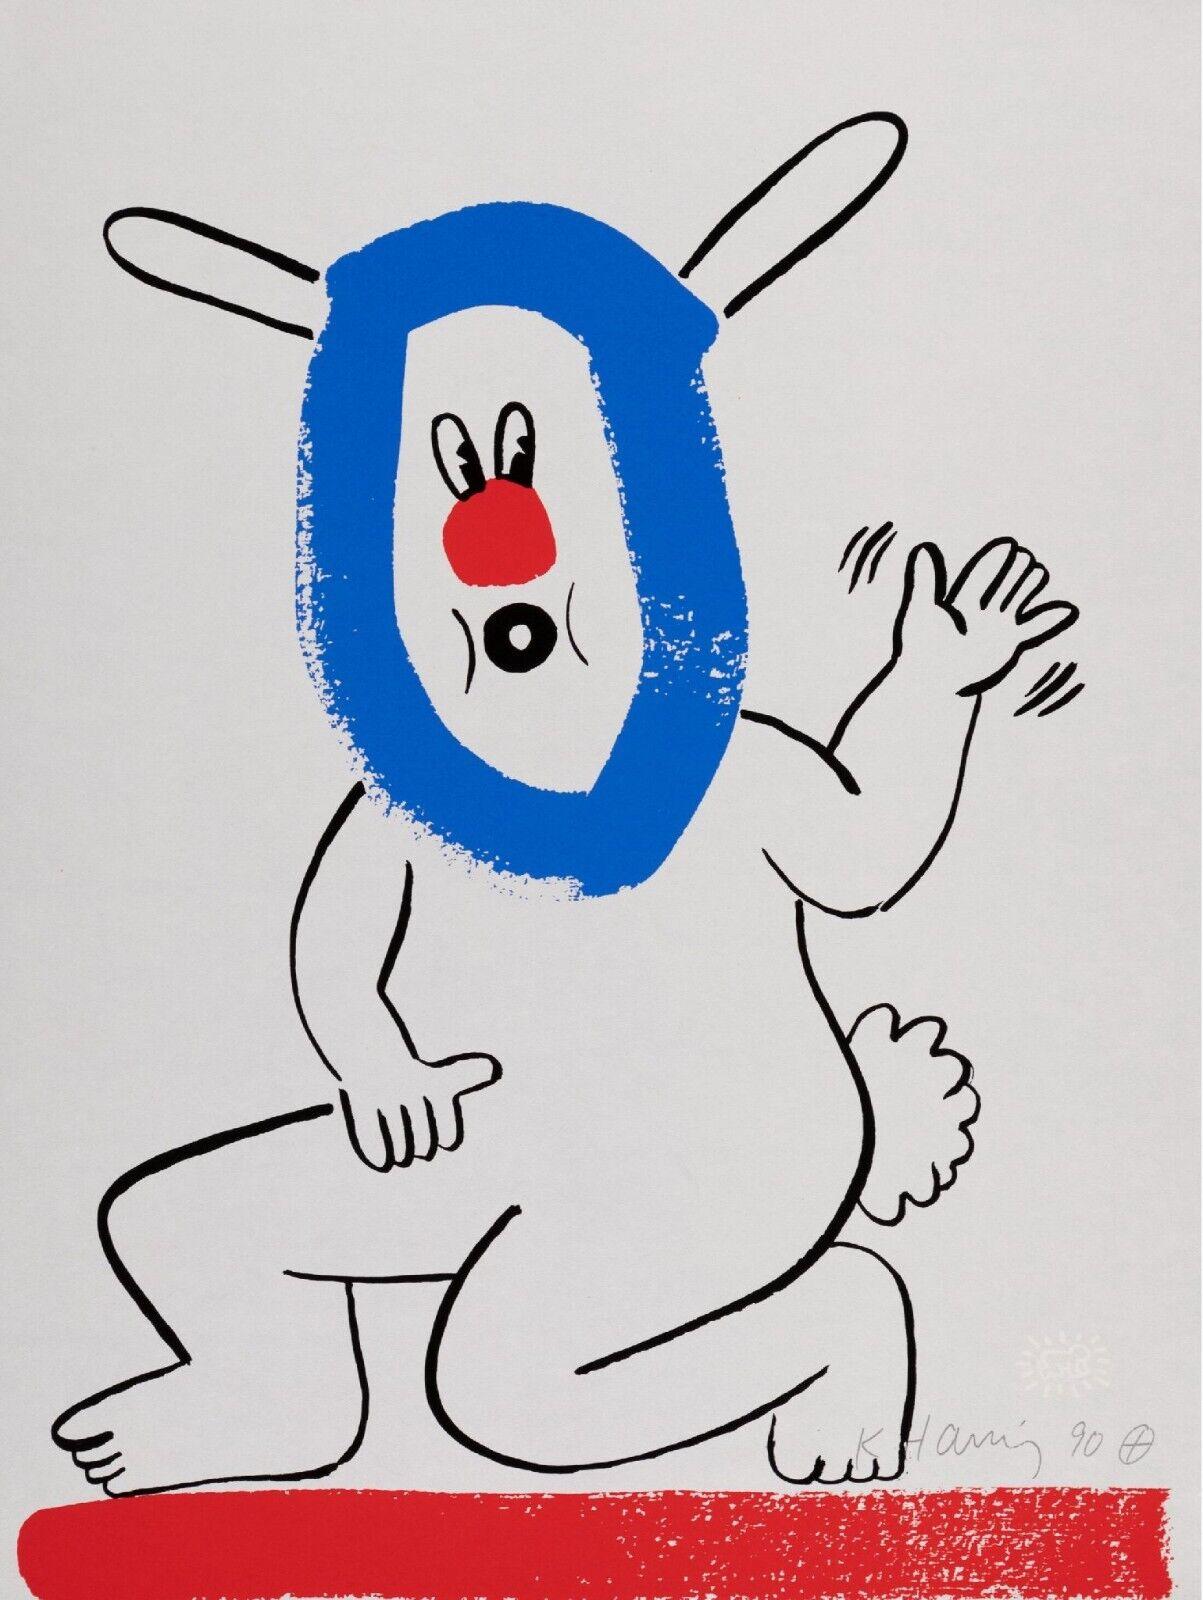 Künstler: Keith Haring
Titel: Unbenannt  (Geschichte von Rot und Blau)
Auflage: Nummeriert Aus der limitierten Auflage von 90 Stück
Medium: Original-Serigrafie auf farbigem Papier
Jahr: 1989-1990
Signatur: In der Platte signiert von Haring, mit